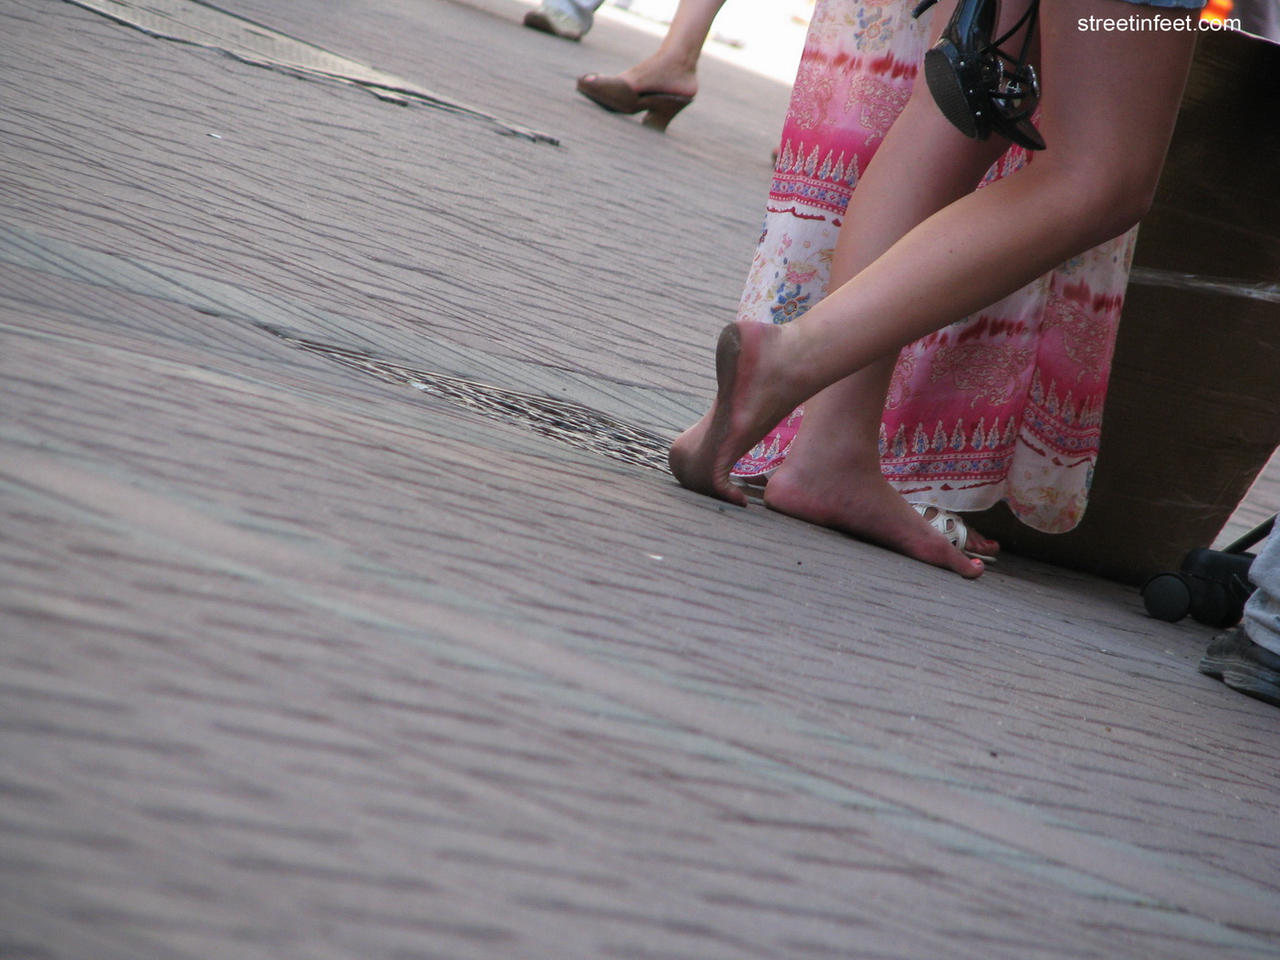 Barefoot girl walking barefoot in public by gomerfordin on 